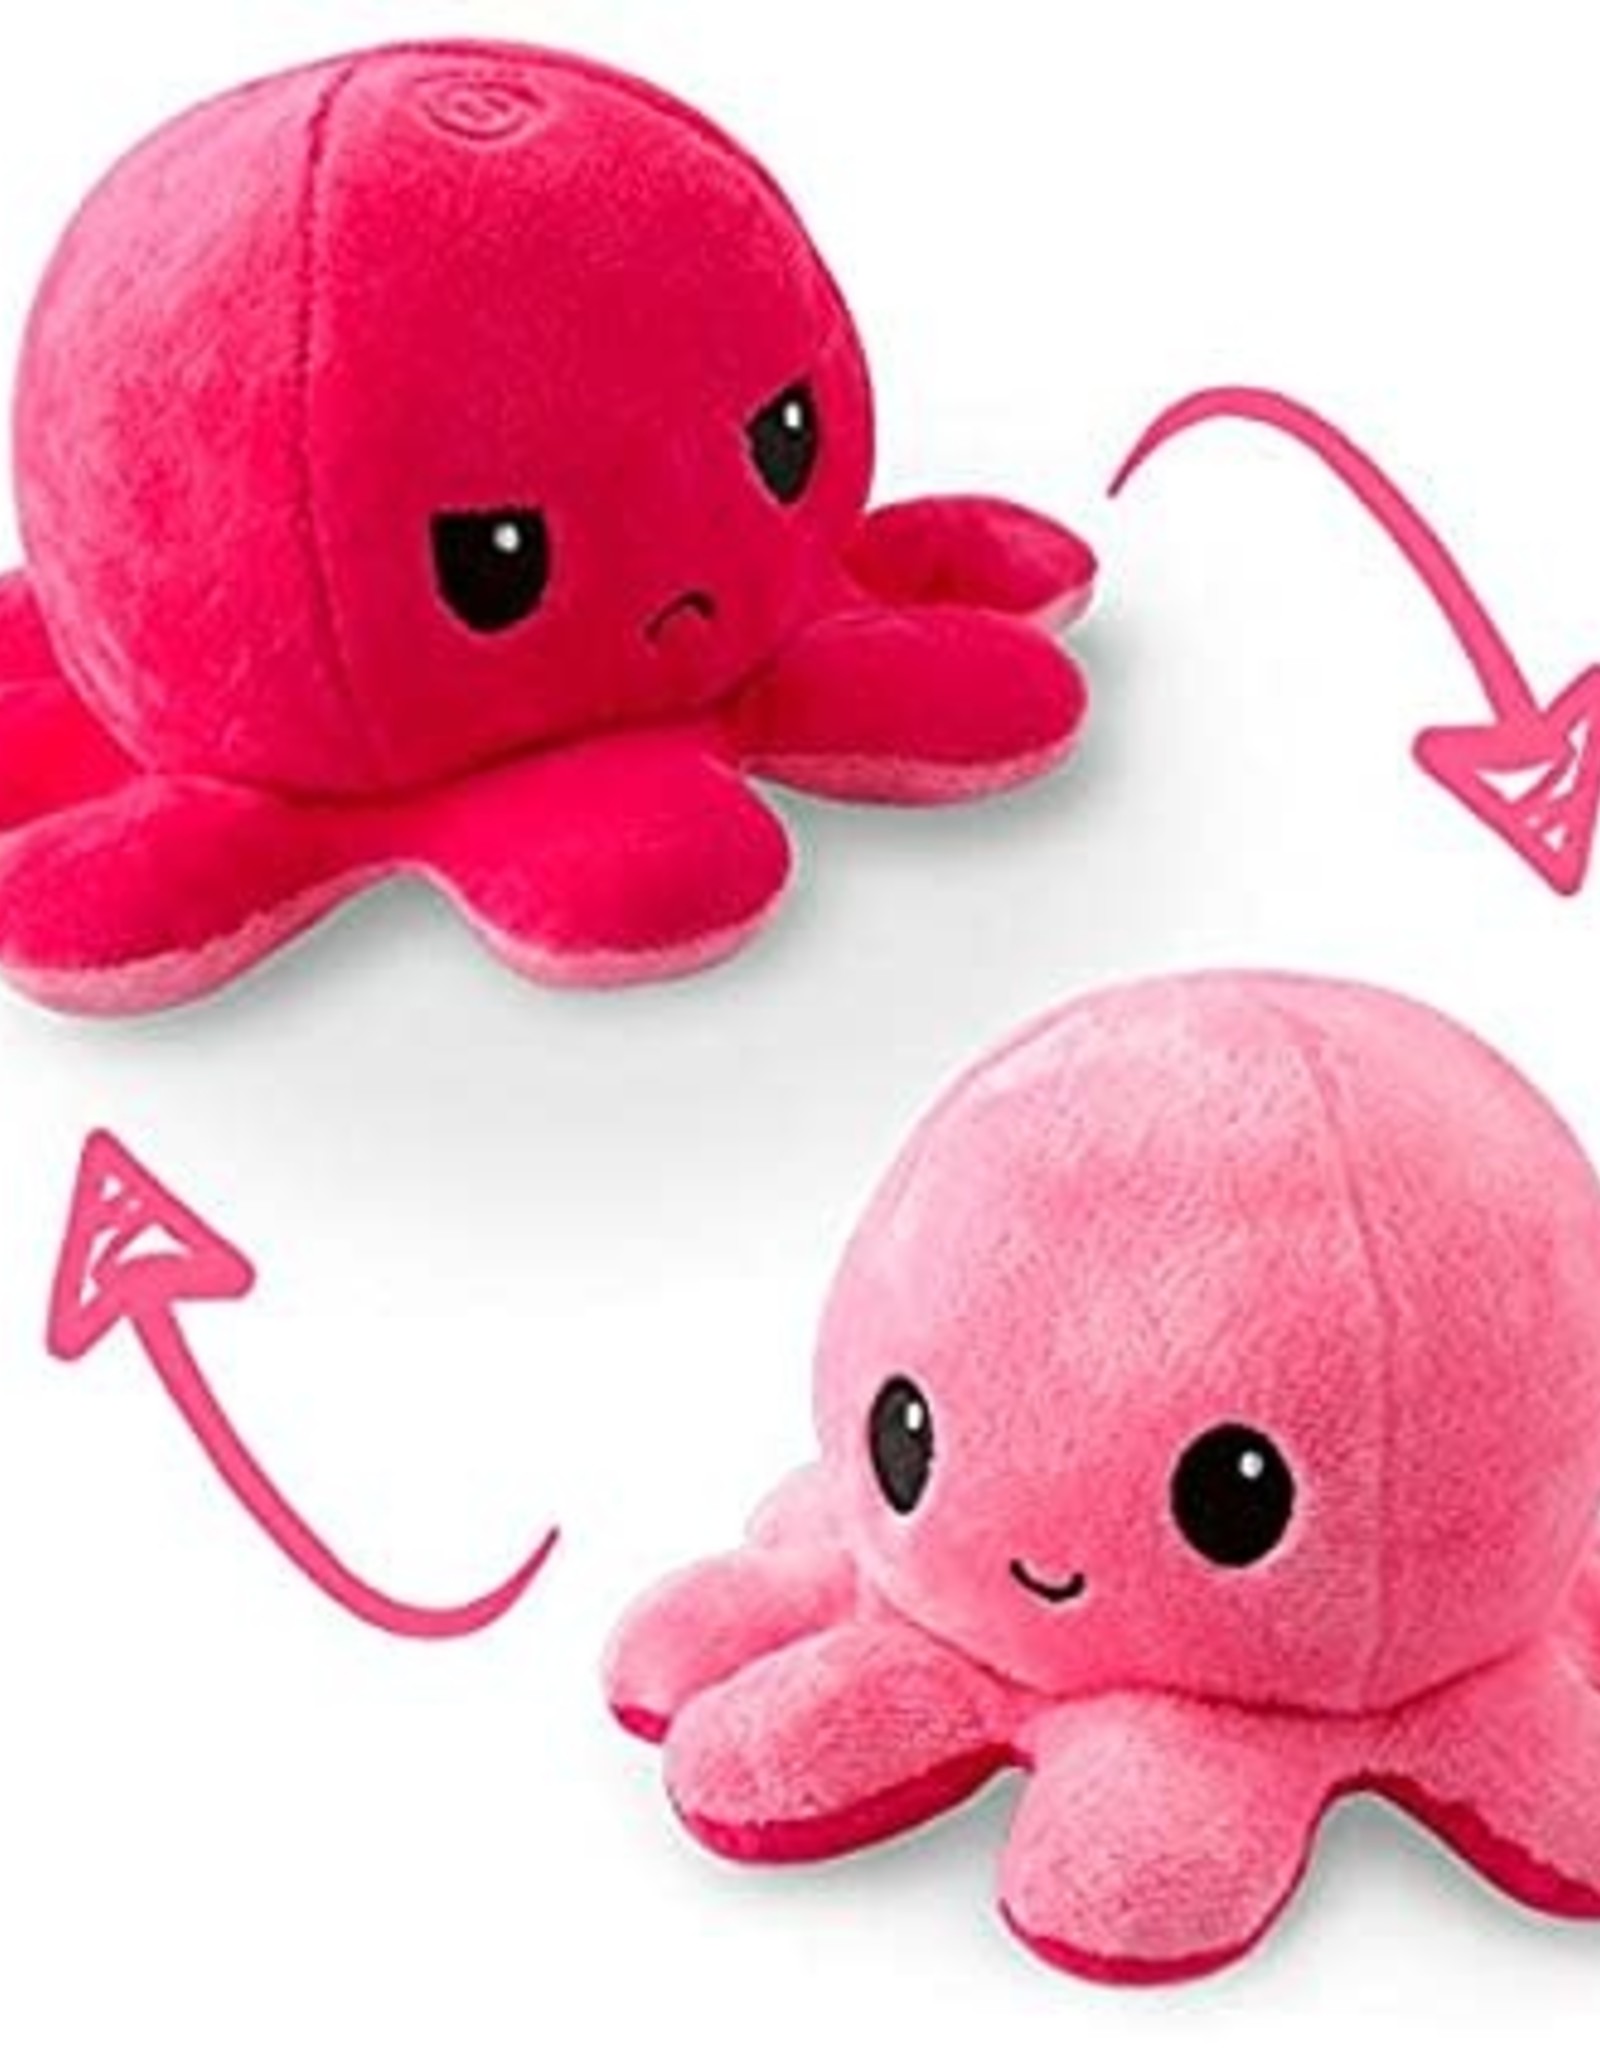 TeeTurtle Reversible Octopus Plush Pink/Pink